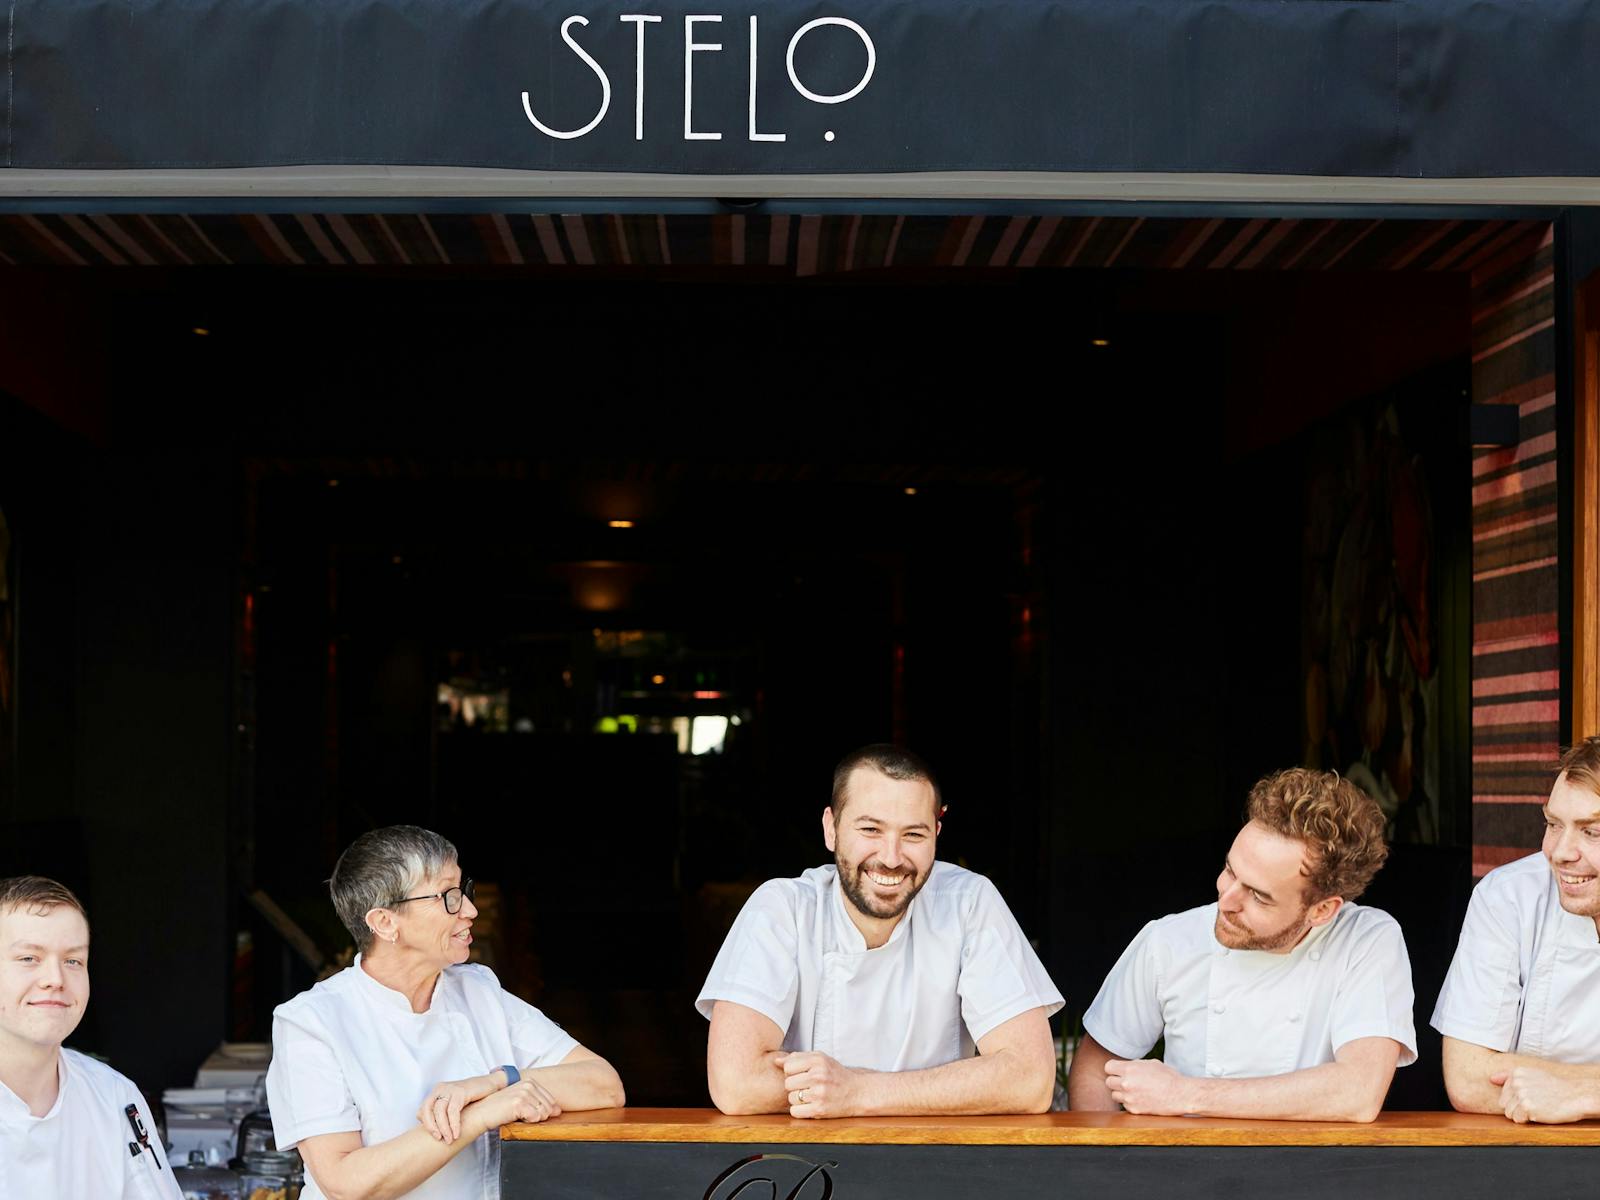 Stelo Kitchen Team